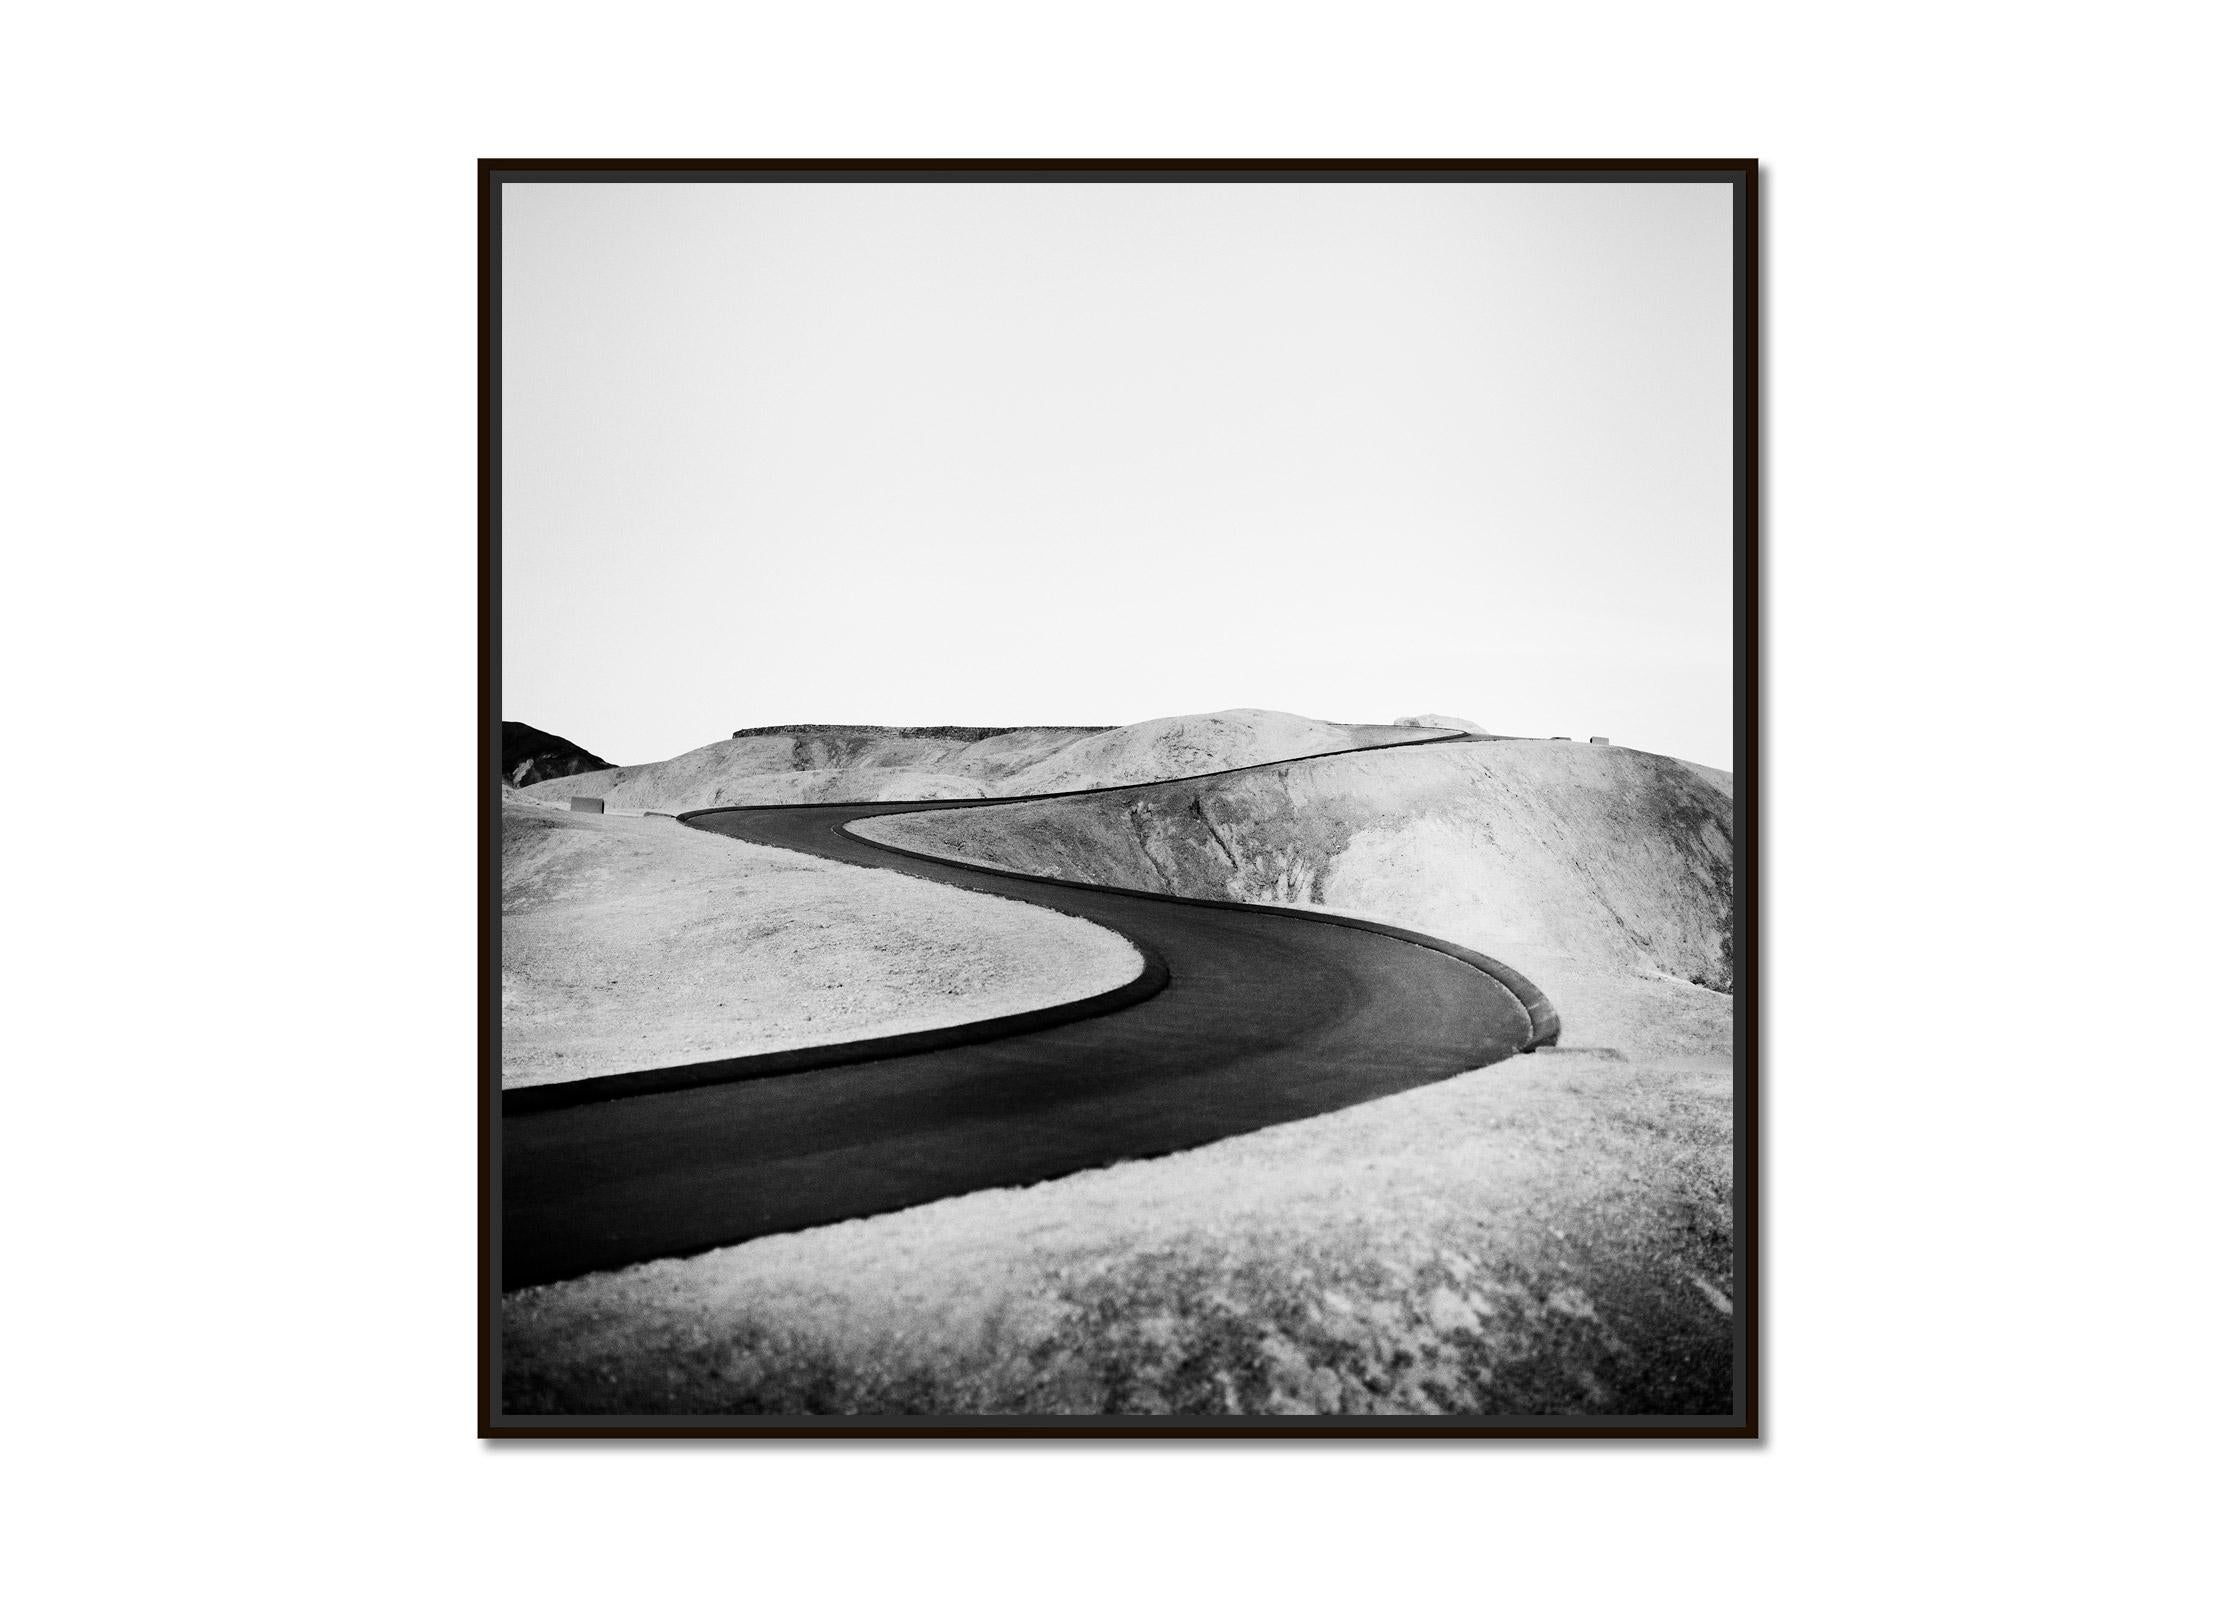 S Curve Shaped Road, Death Valley, Kalifornien, USA, Schwarz-Weiß-Landschaft – Photograph von Gerald Berghammer